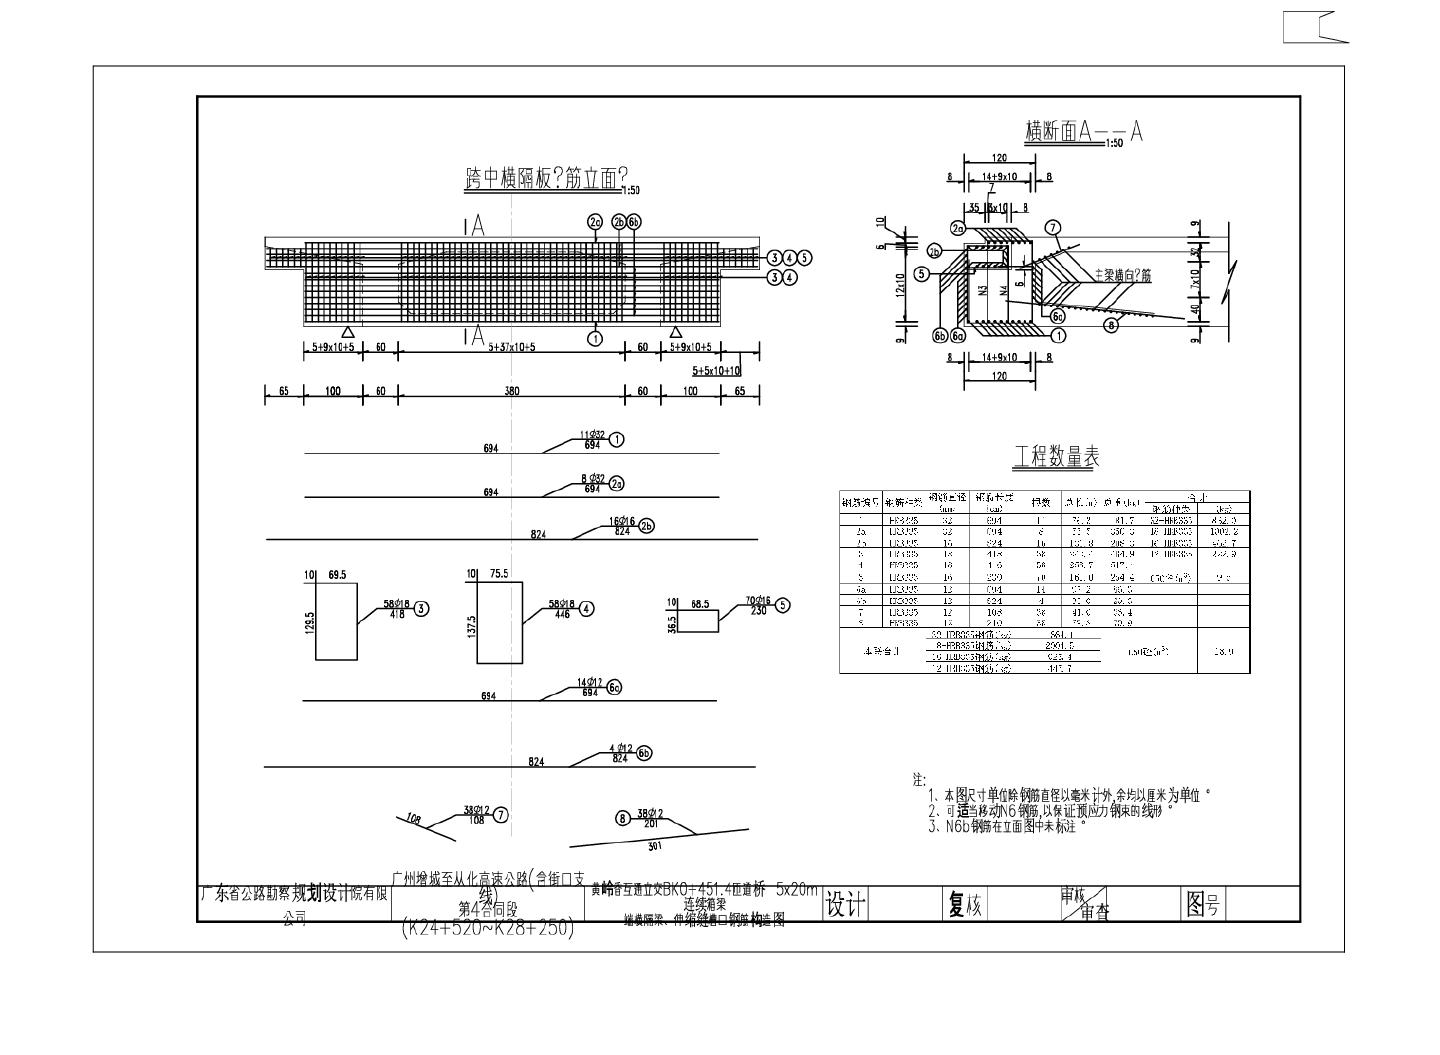 黄岭香BK0 451.4匝道桥 5x20m连续箱梁端横隔梁伸缩缝槽口钢筋构造图